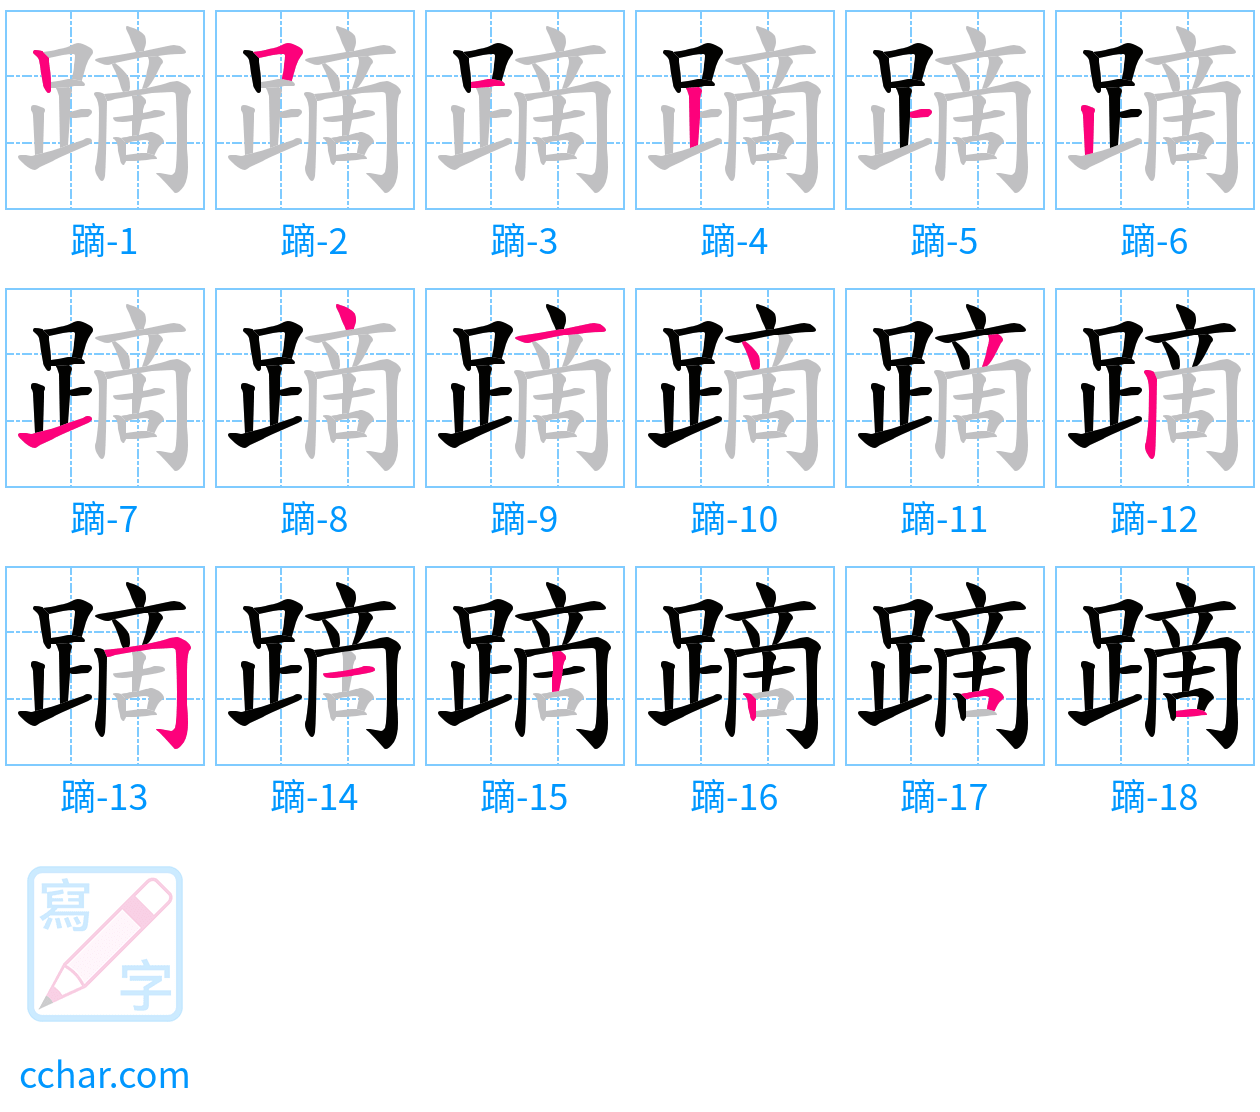 蹢 stroke order step-by-step diagram